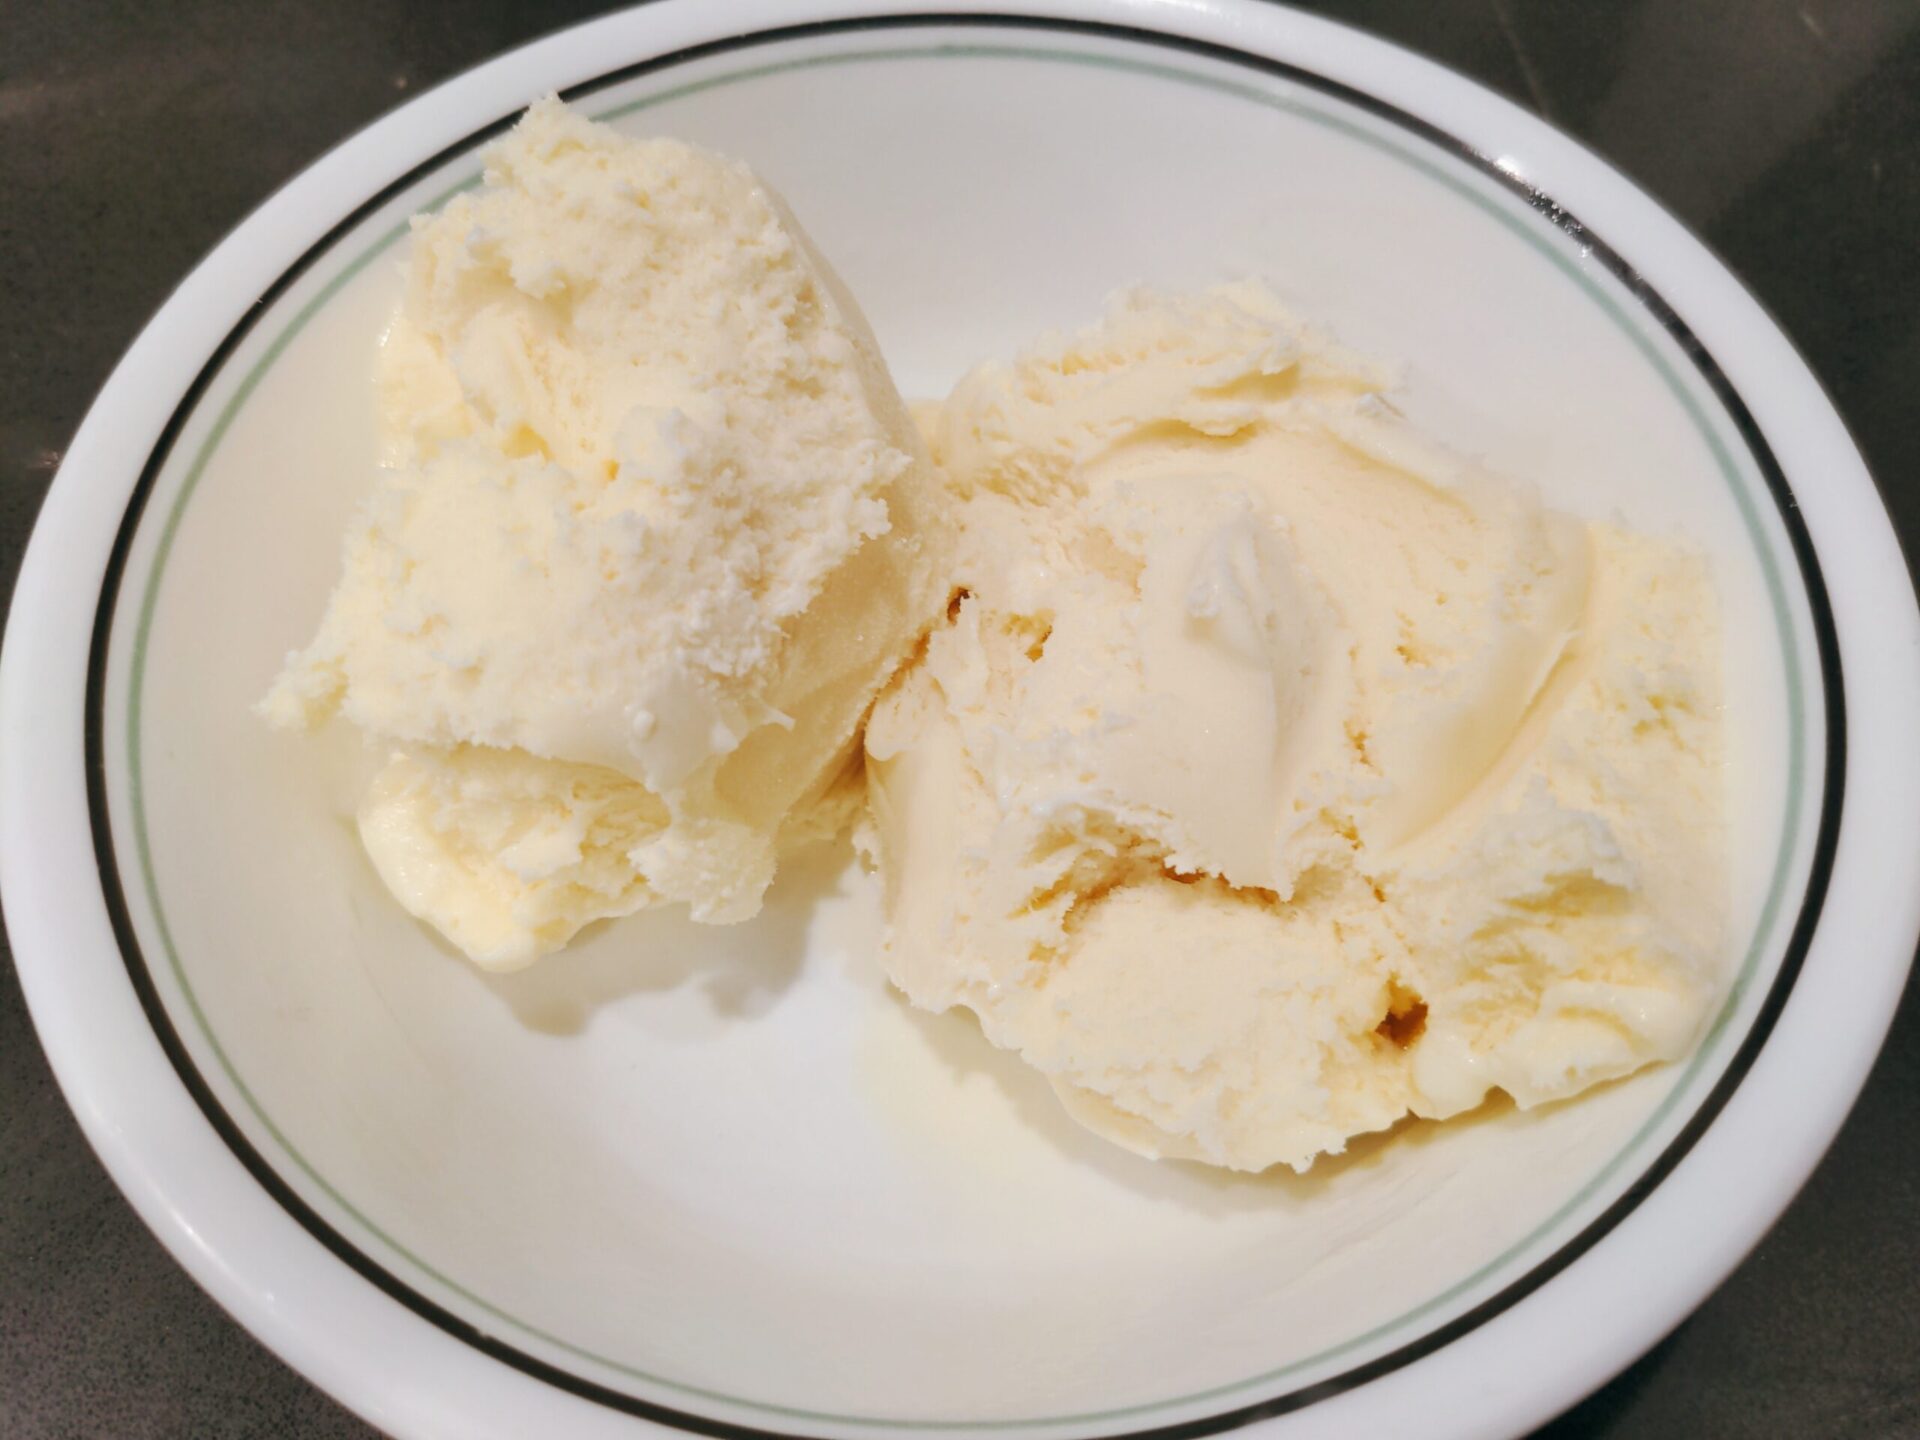 Super Premium Ice Cream from Costco scaled